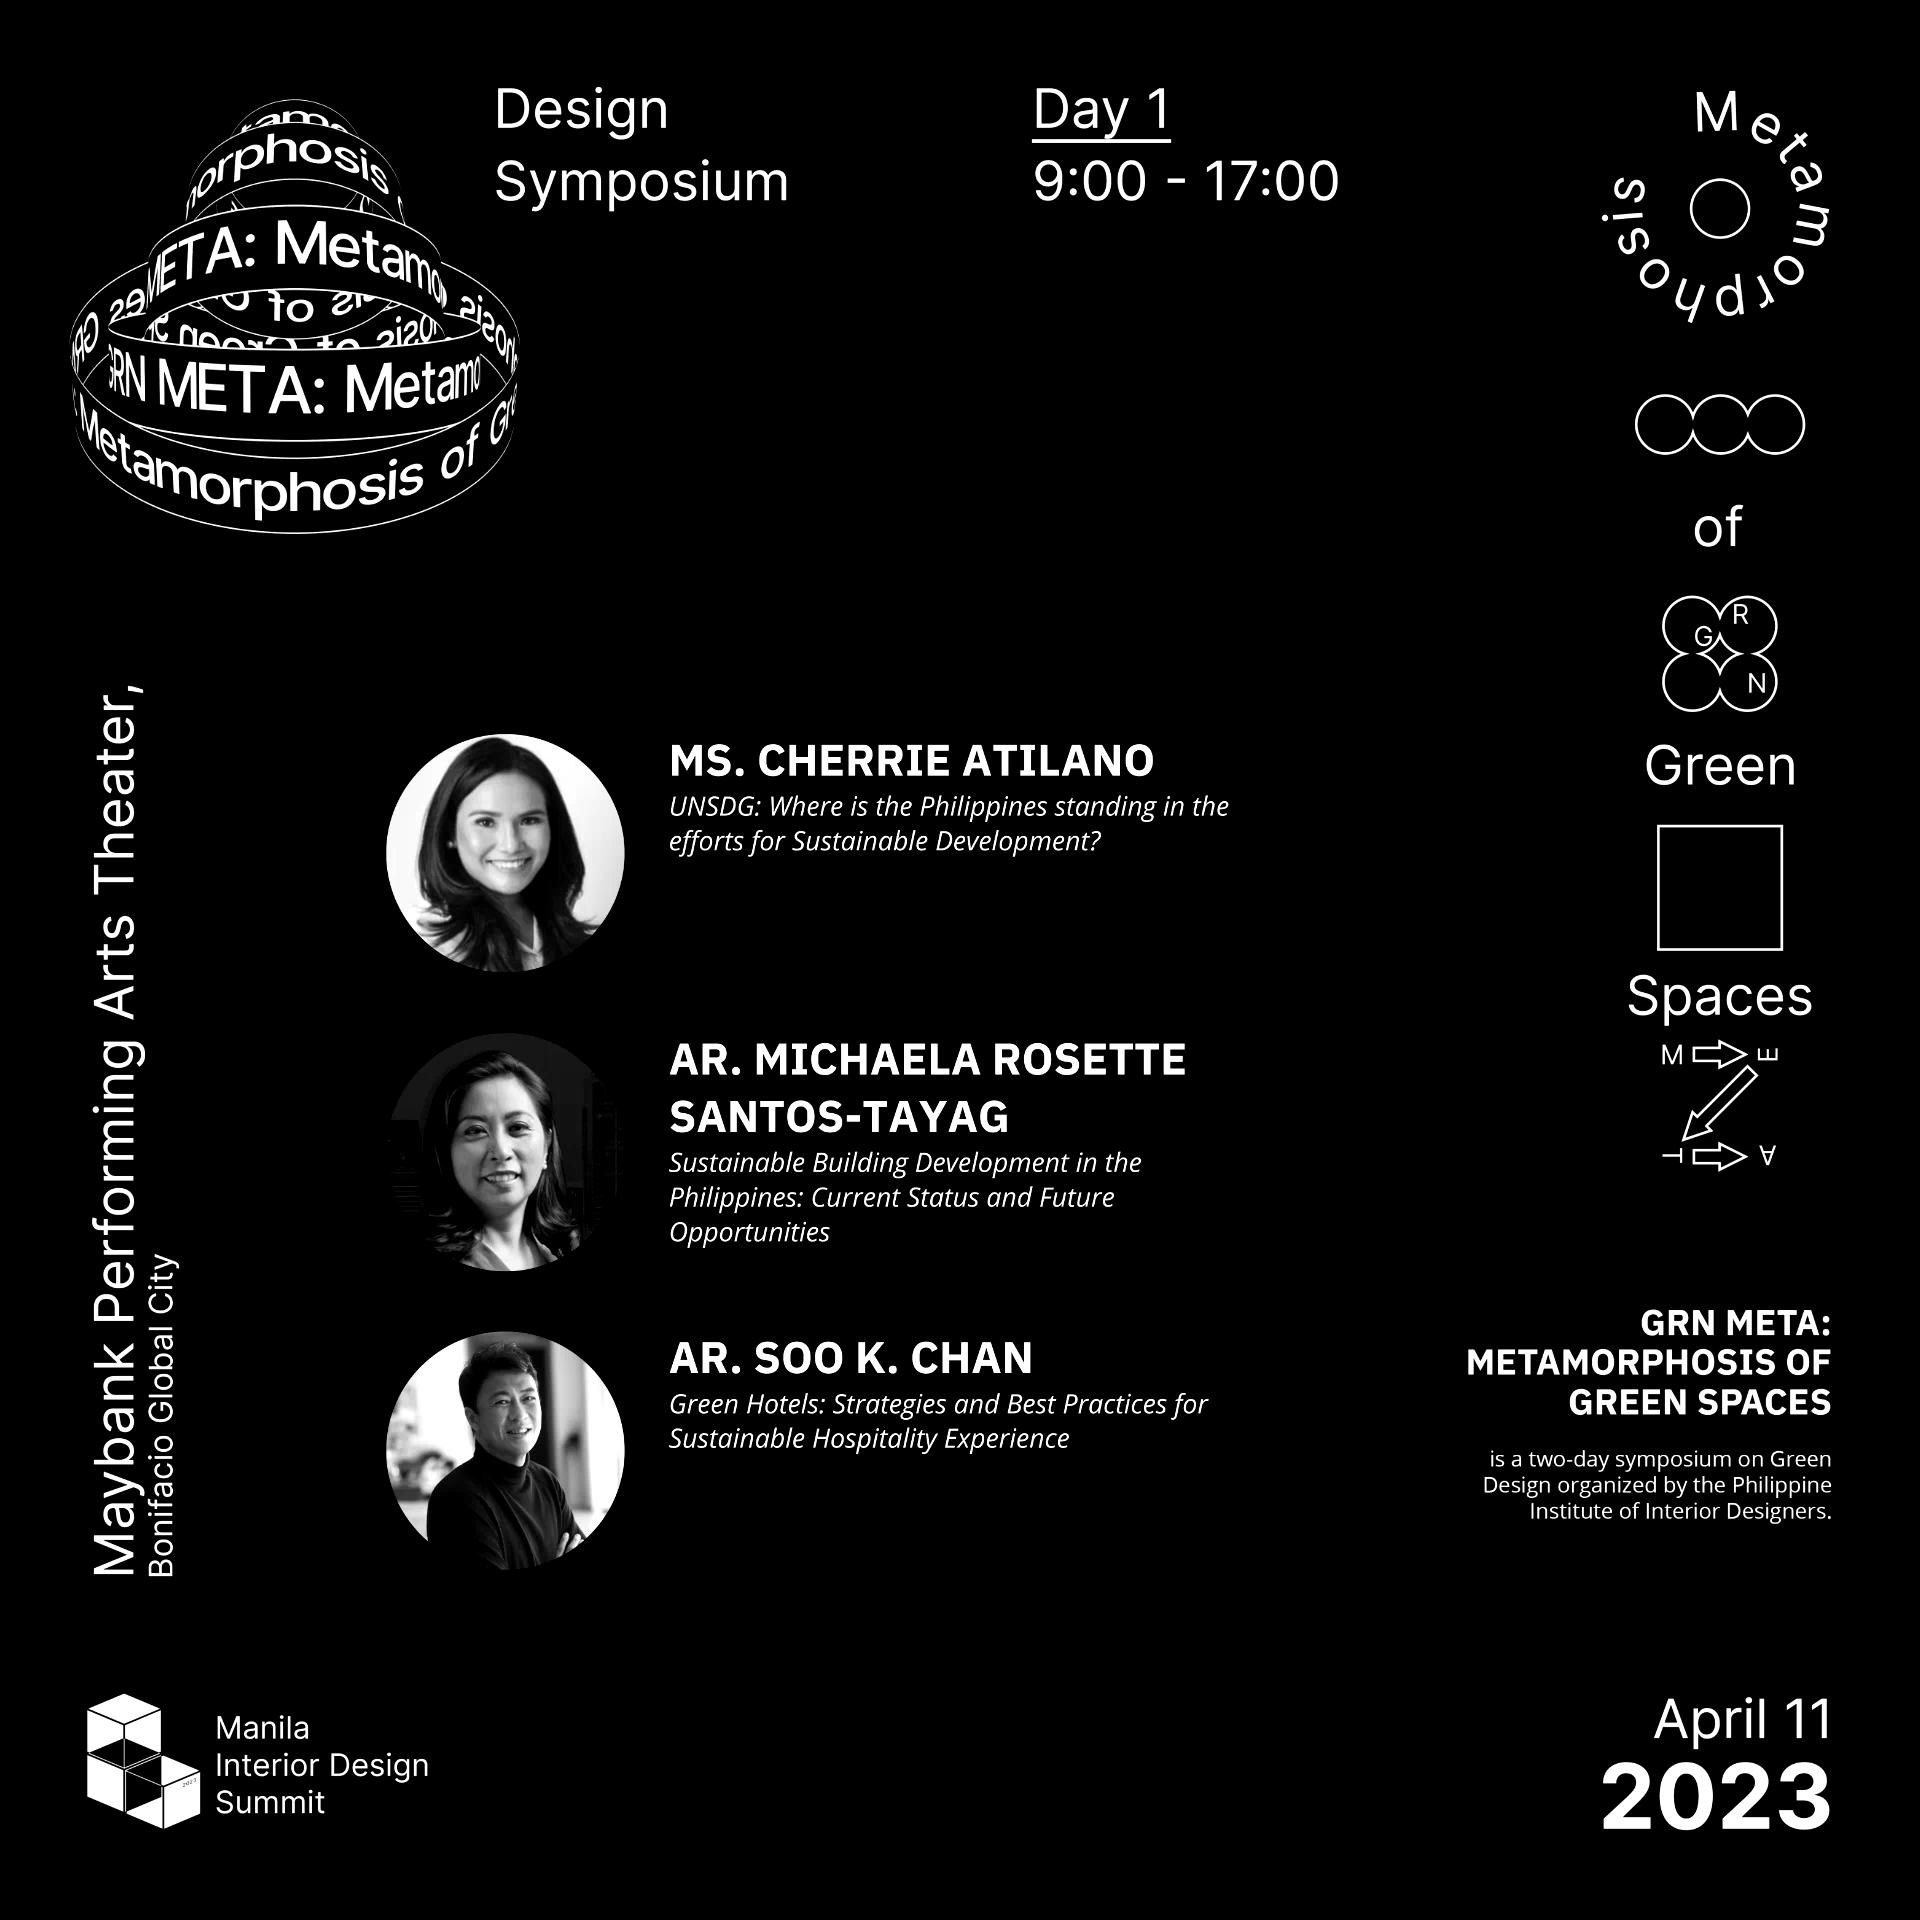 Design Symposium Day 1 Manila Interior Design Summit 2023